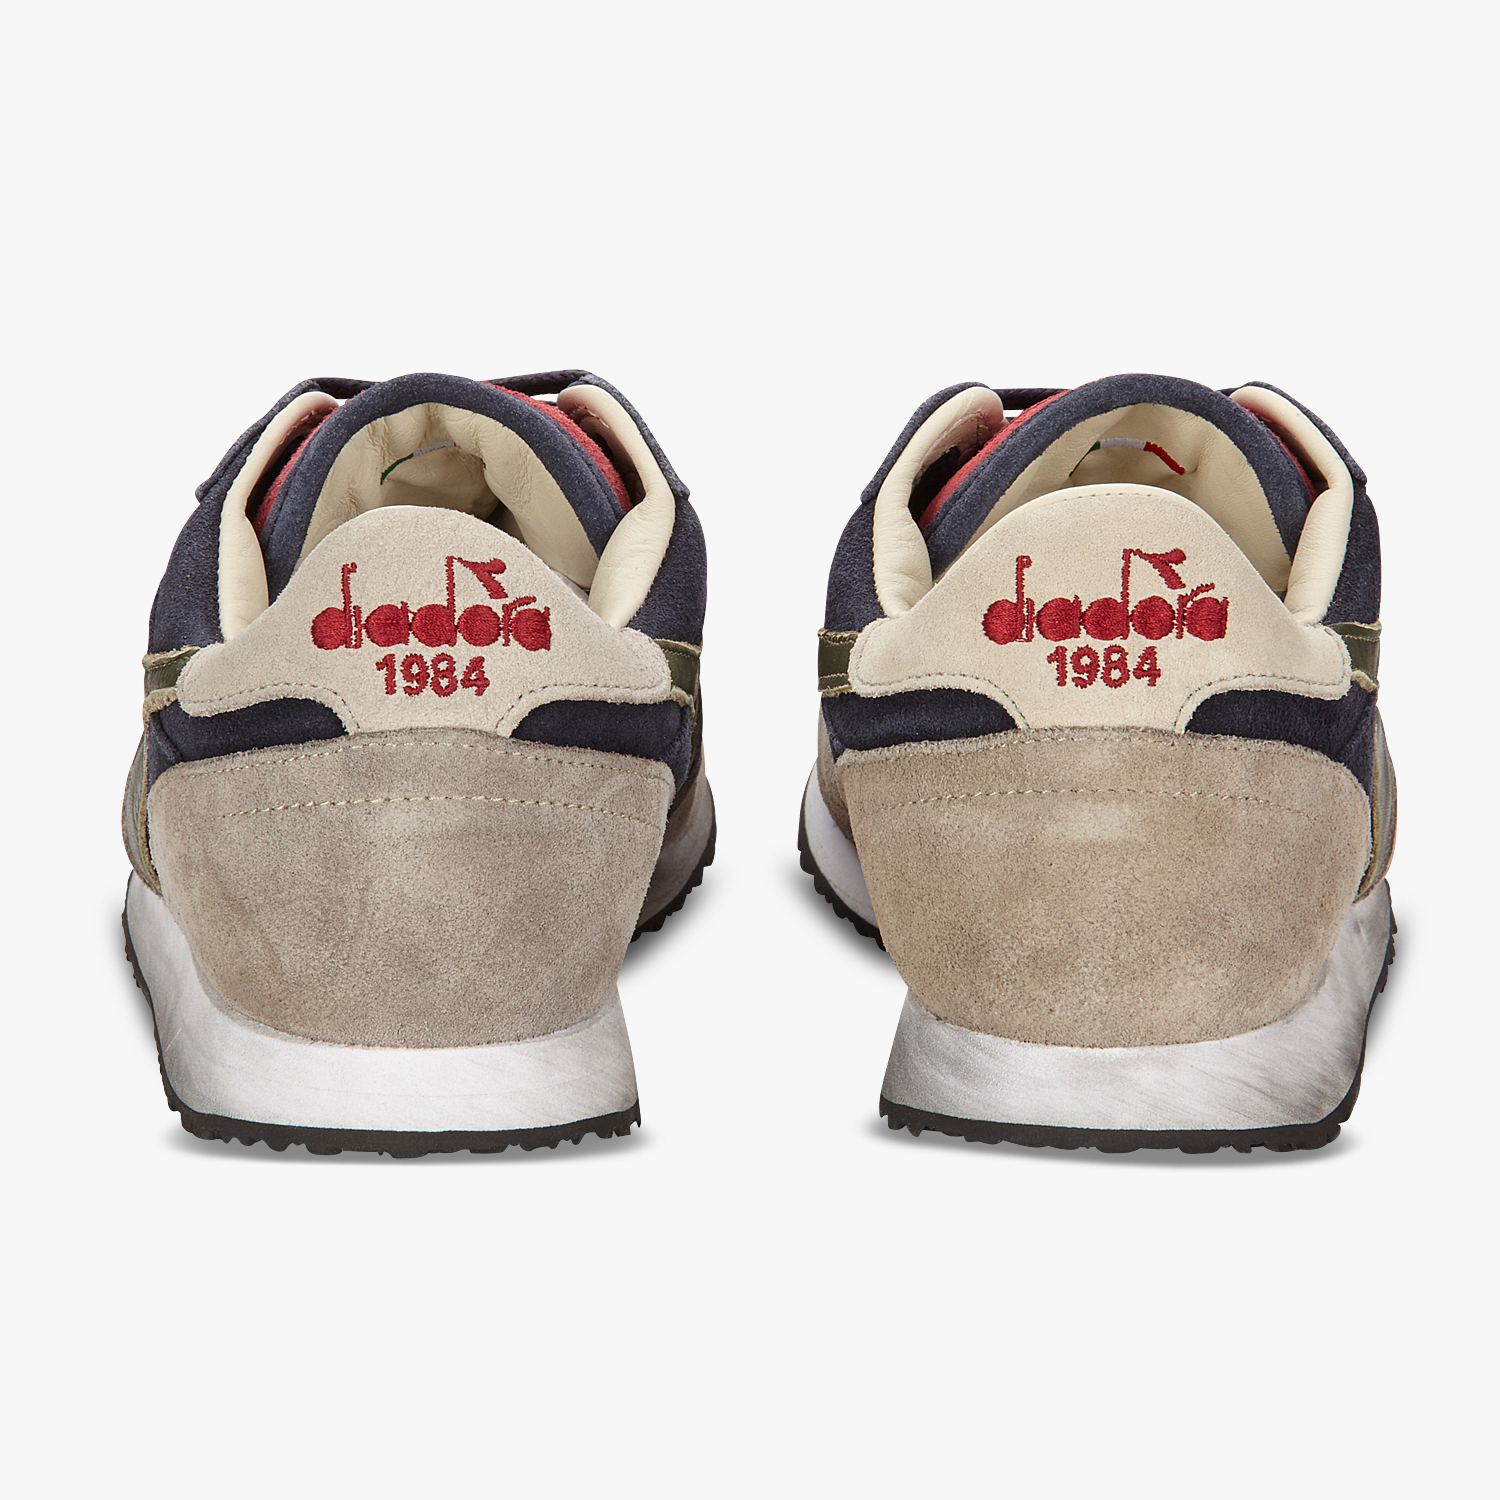 diadora 1984 shoes